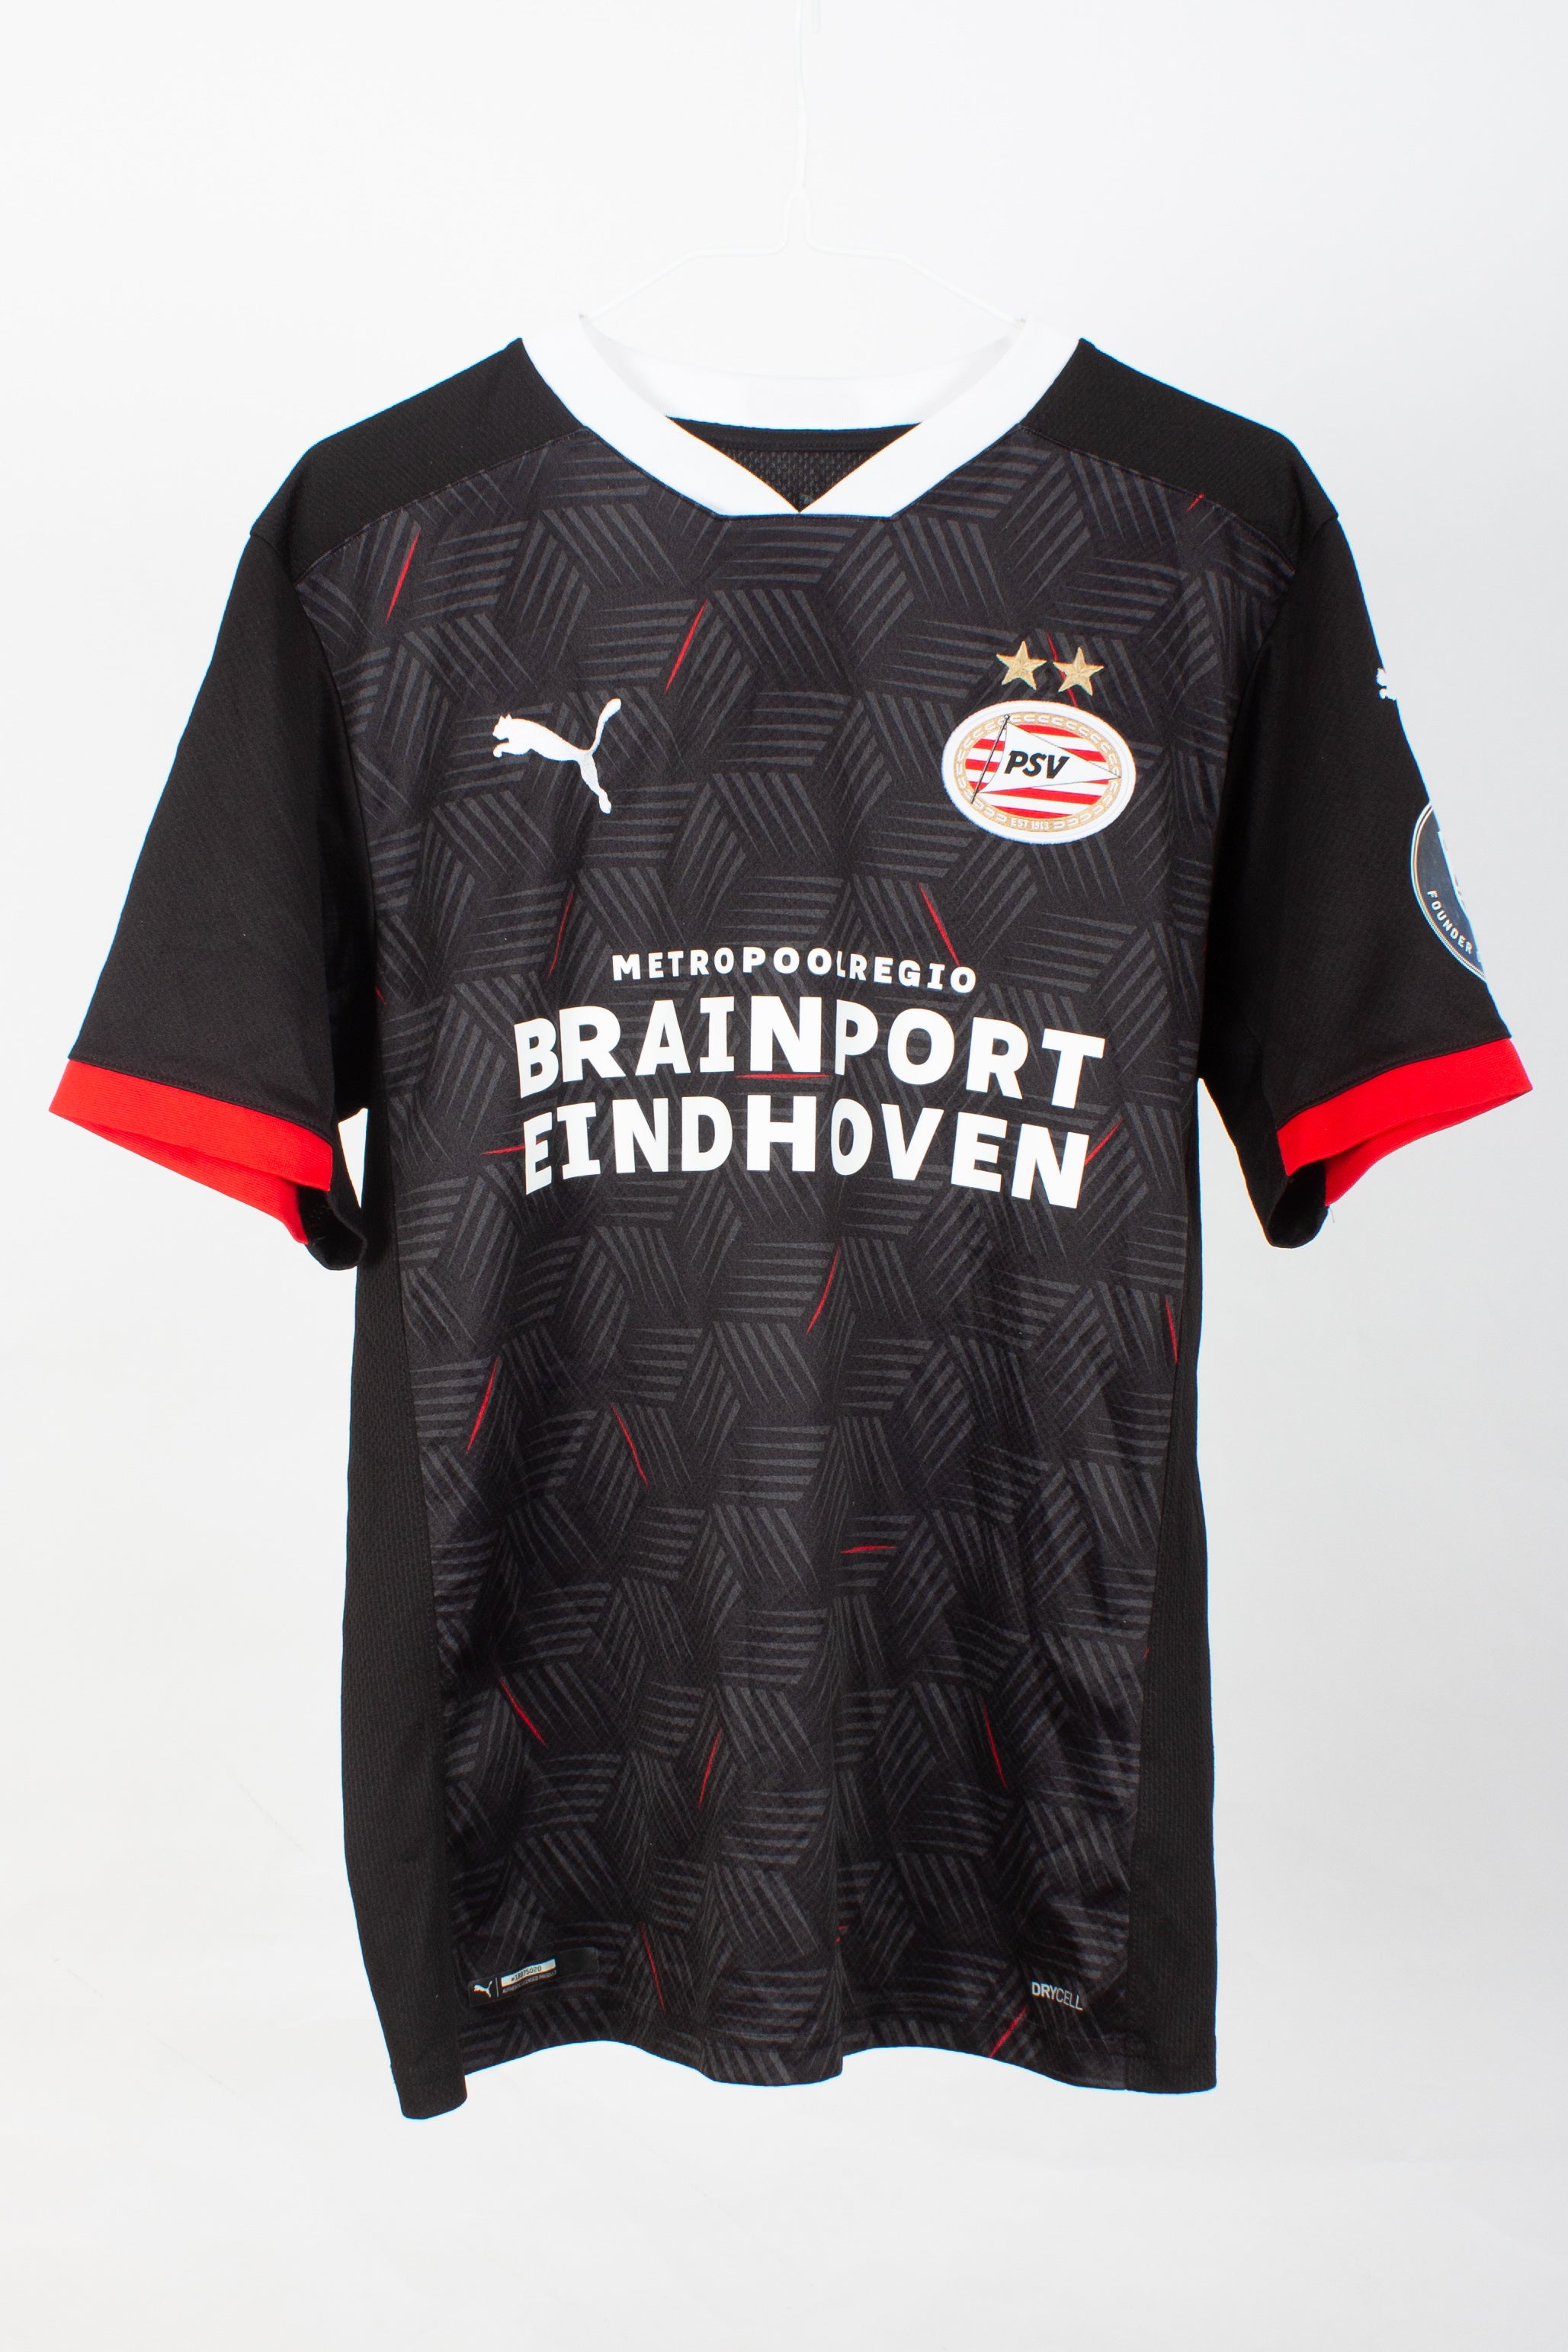 PSV Eindhoven 2020/21 Third Shirt (Ihattaren #10) (S)